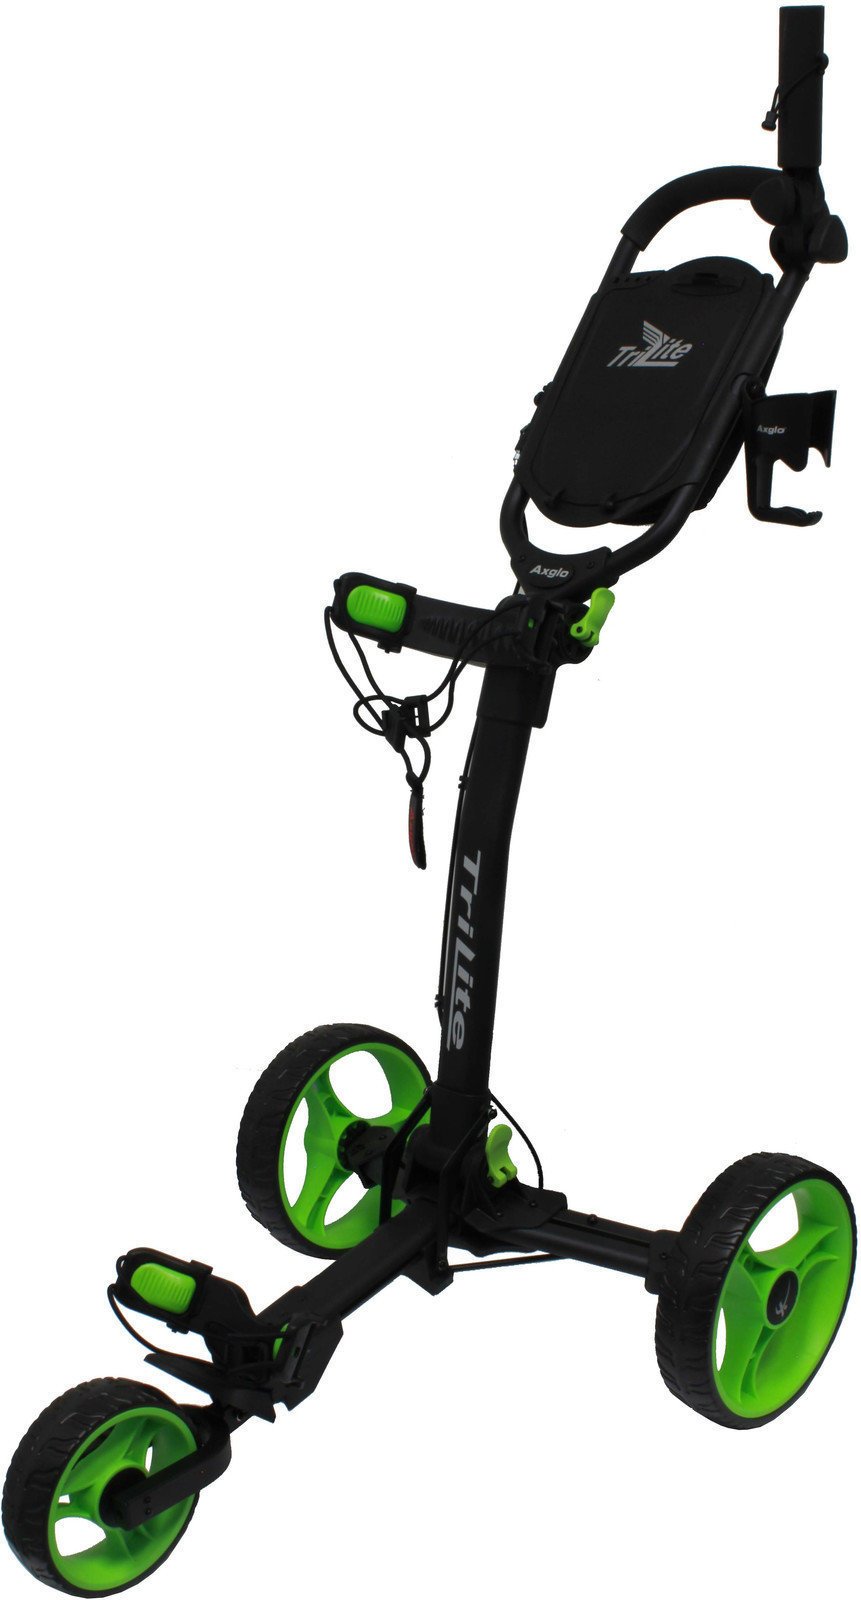 Manuálny golfový vozík Axglo TriLite Black/Green Manuálny golfový vozík